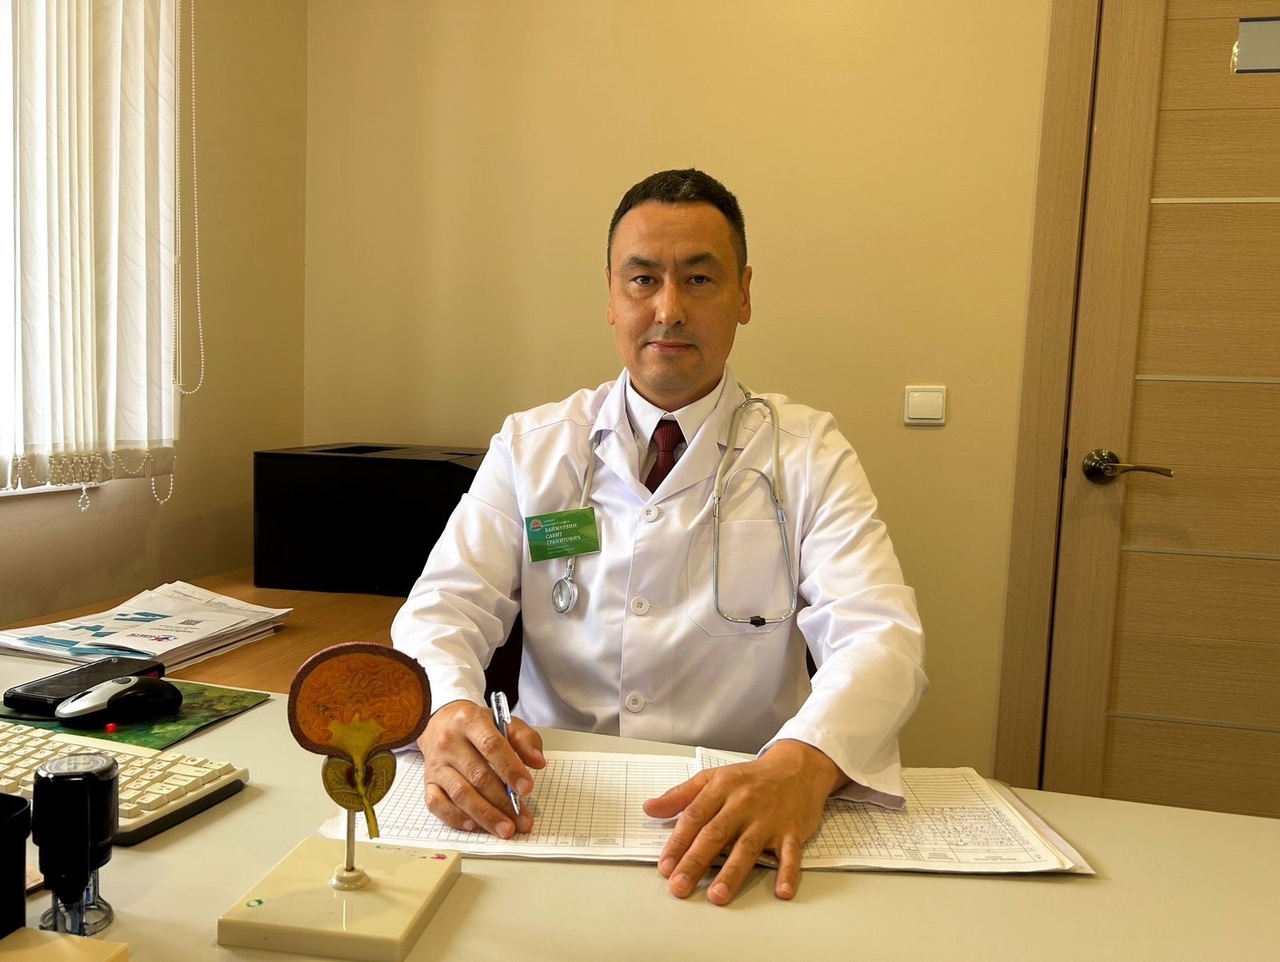 Санаторий «Красноусольск» предлагает профильную «Программу санаторно-курортной помощи больным с воспалительными заболеваниями мужских половых органов» и комплексную лечебно-оздоровительную программу «Мужское здоровье».